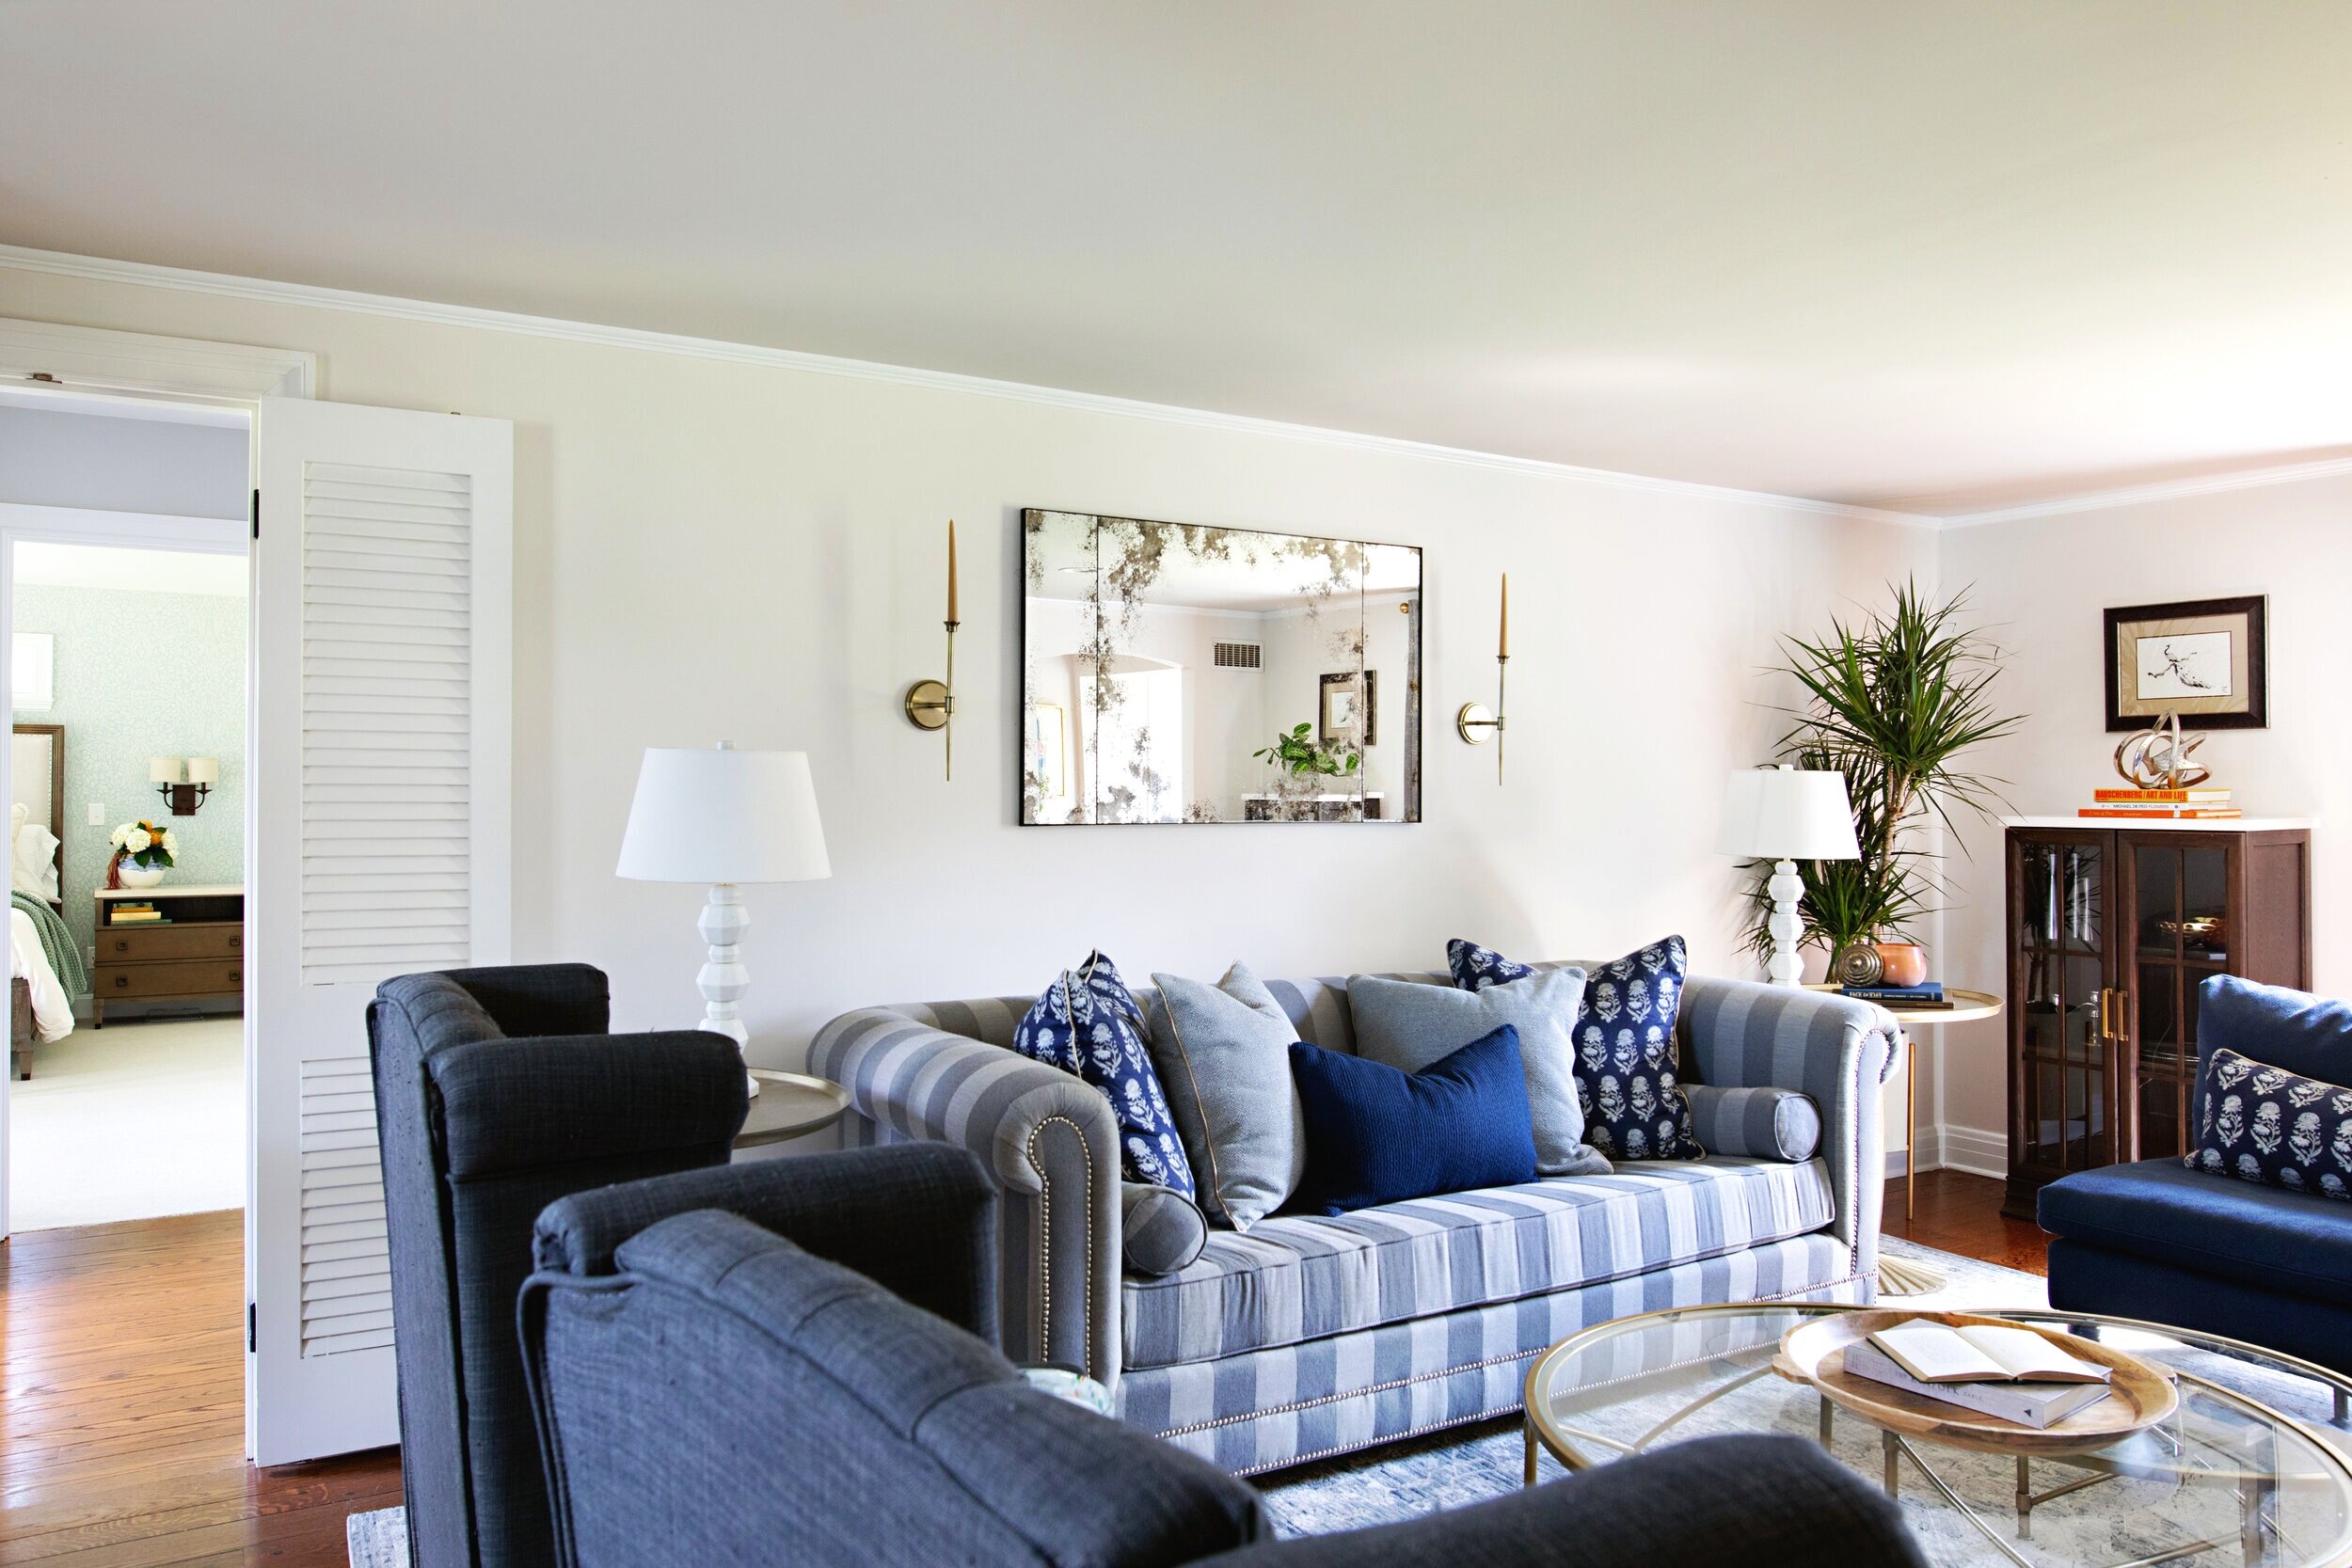 Wendel living room designed by Jackie Barnes Design